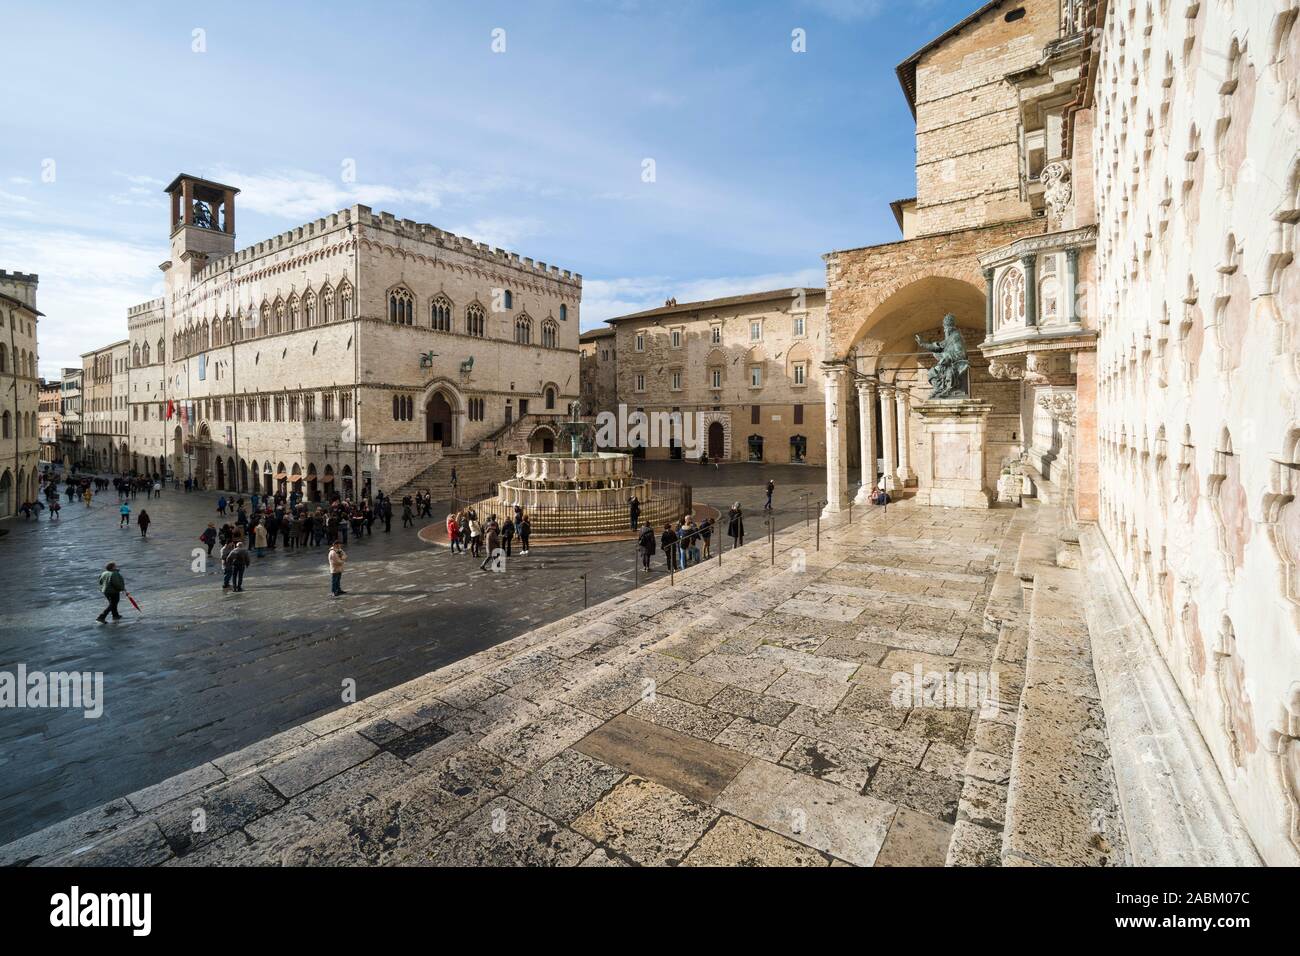 Perugia. Italy. The central Piazza IV Novembre, Corso Pietro Vannucci, Palazzo dei Priori (left), Fontana Maggiore (centre) and the Cattedrale di San Stock Photo